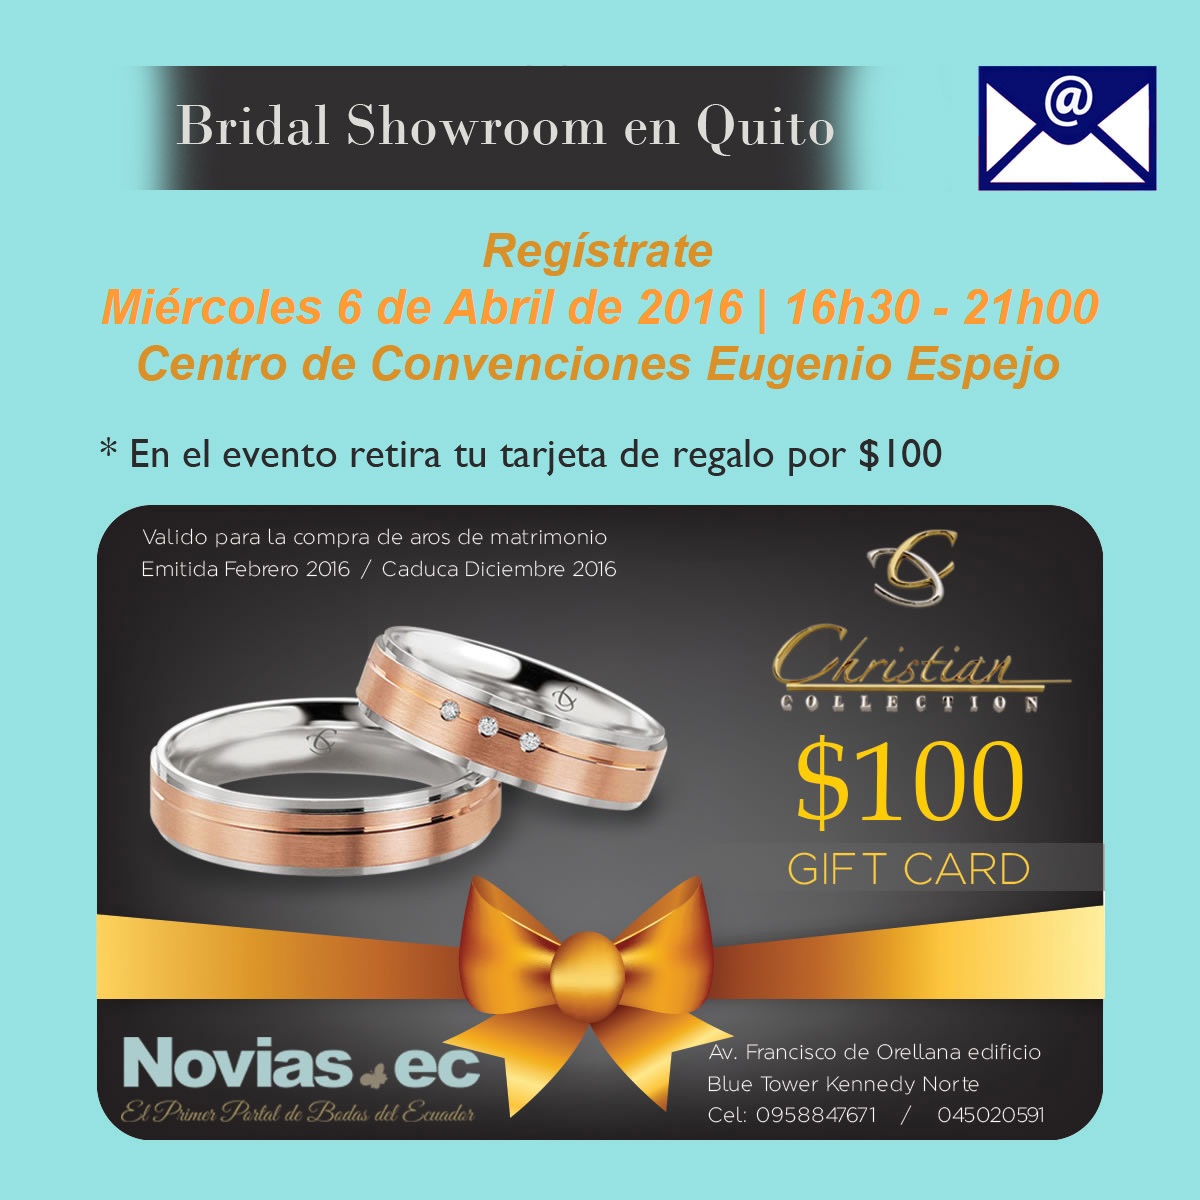 Bridal showroom Quito 7 de abril_opt